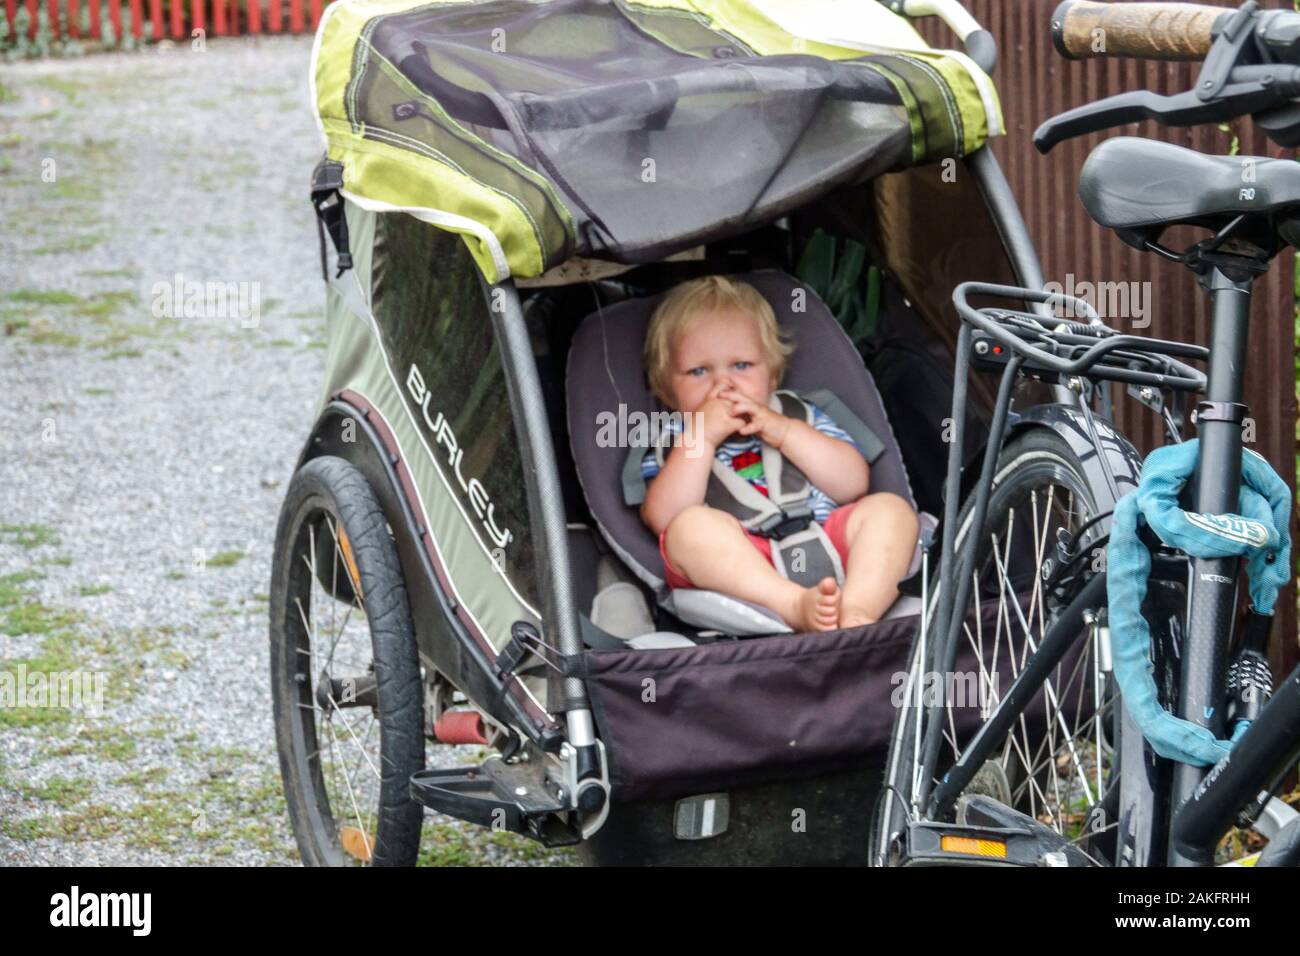 Tout-petit dans la remorque de vélo Allemagne enfant remorque de vélo tout-petit seul Banque D'Images